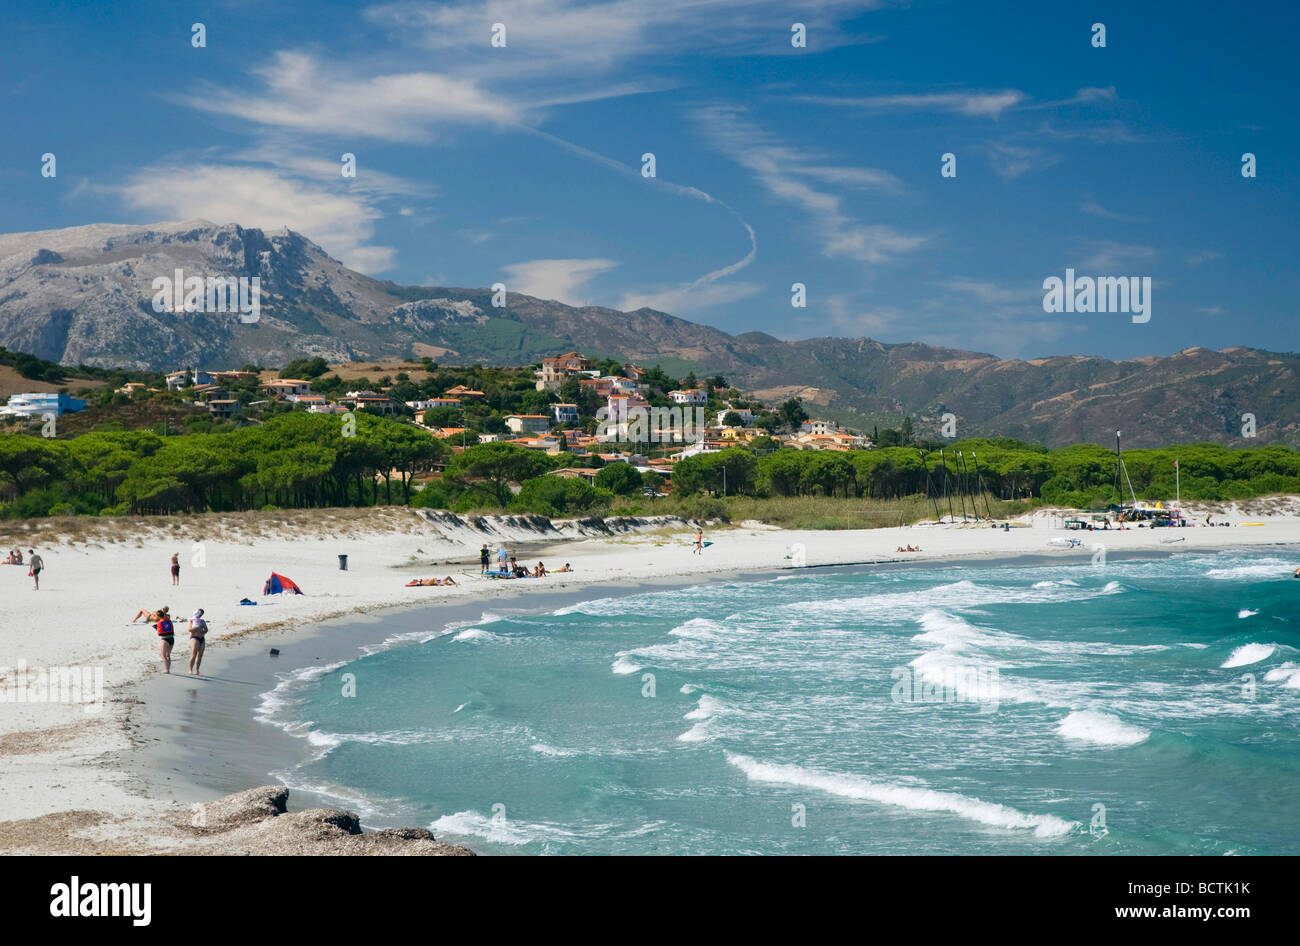 Sandy beach, bay, coast, Santa Lucia, Sardinia, Italy, Europe Stock Photo